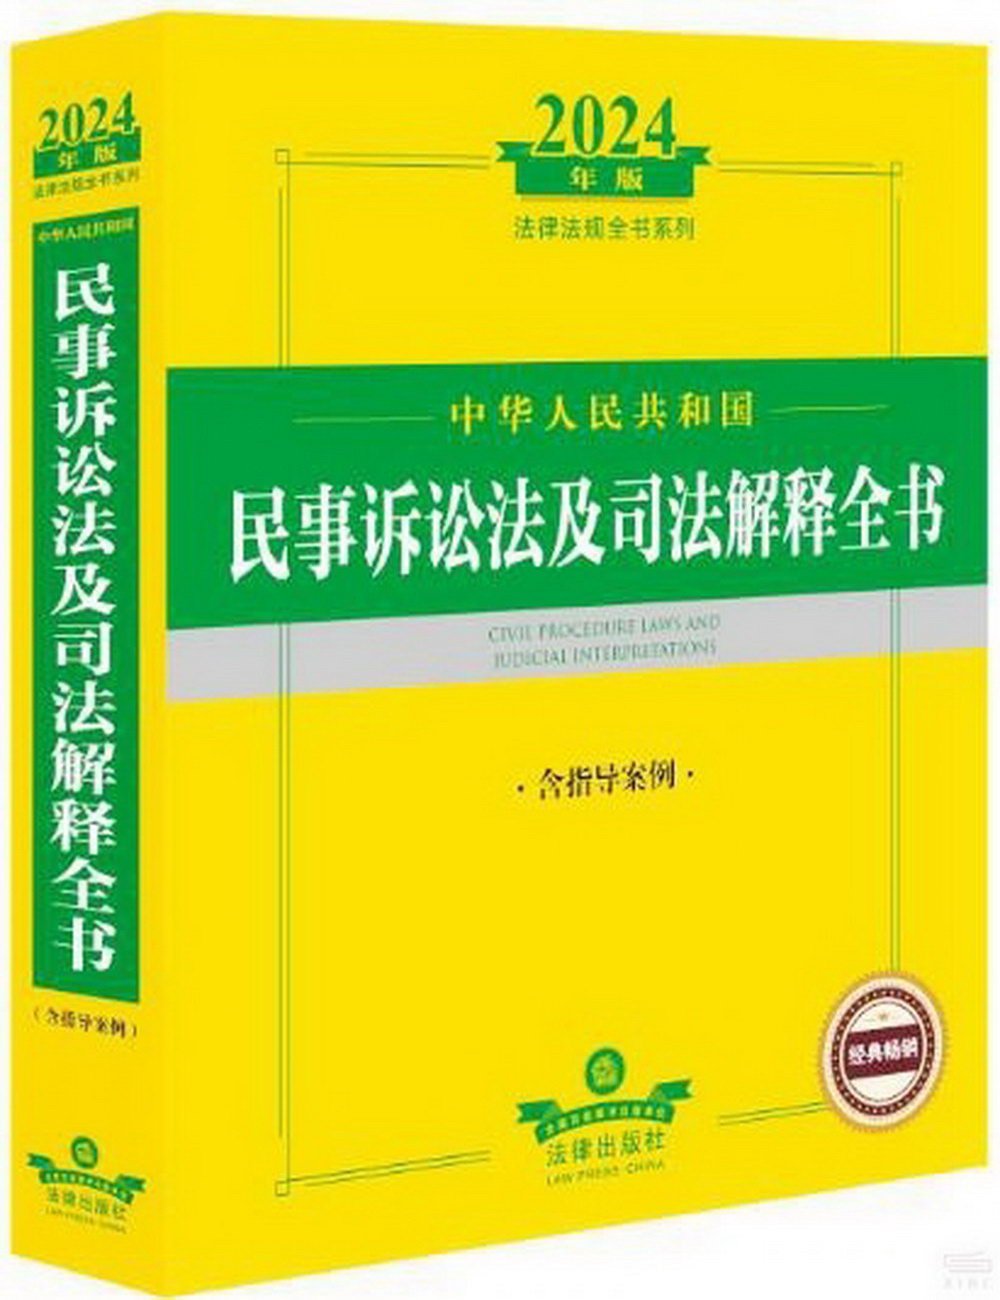 2024年版法律法規全書系列：中華人民共和國民事訴訟法及司法解釋全書（含指導案例）